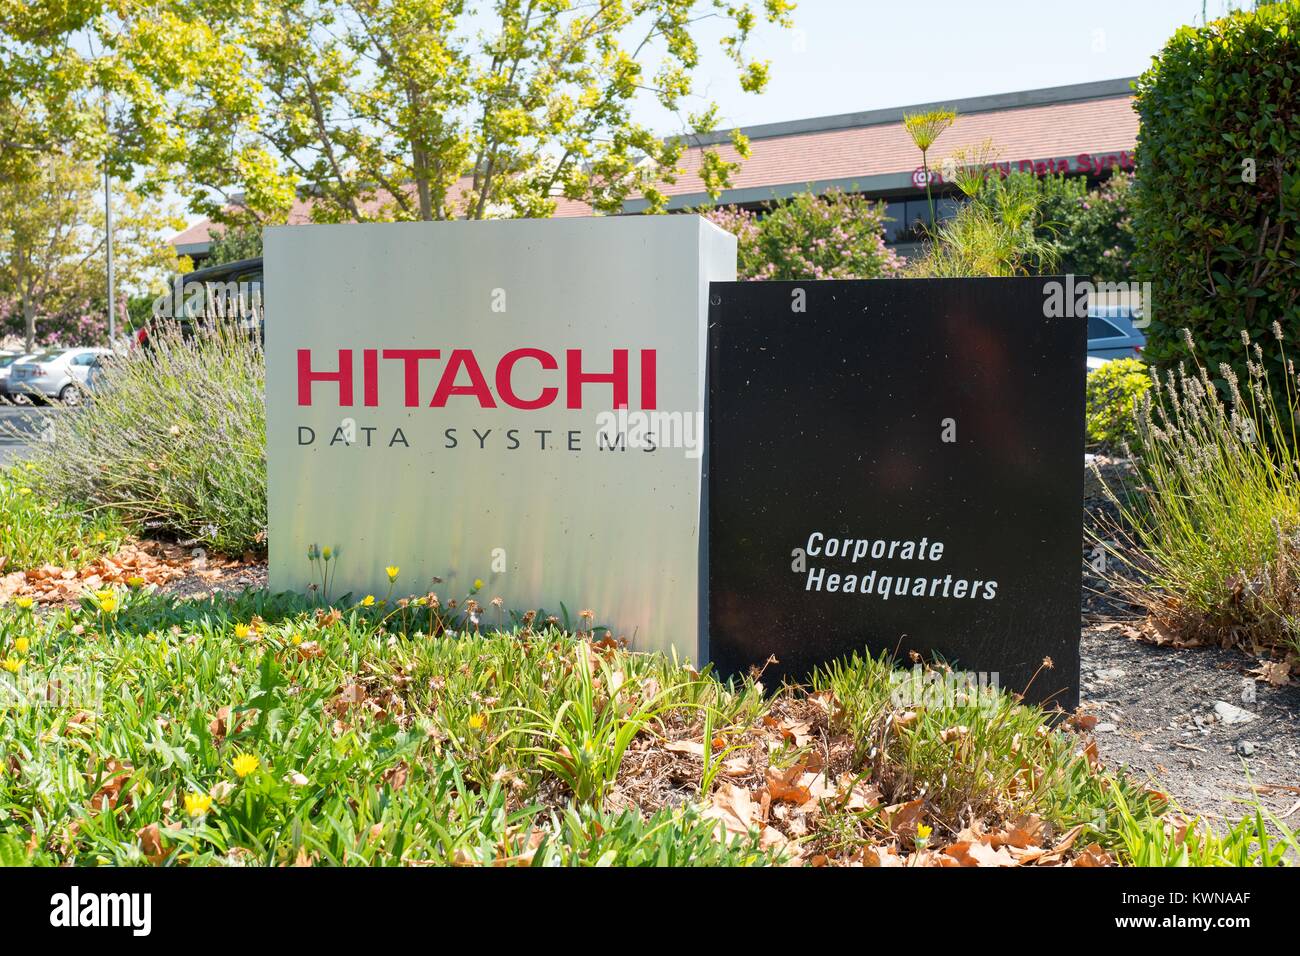 Affichage dynamique avec logo en Silicon Valley siège de conglomérale multinationale japonaise Hitachi, Santa Clara, Californie, 17 août 2017. Banque D'Images